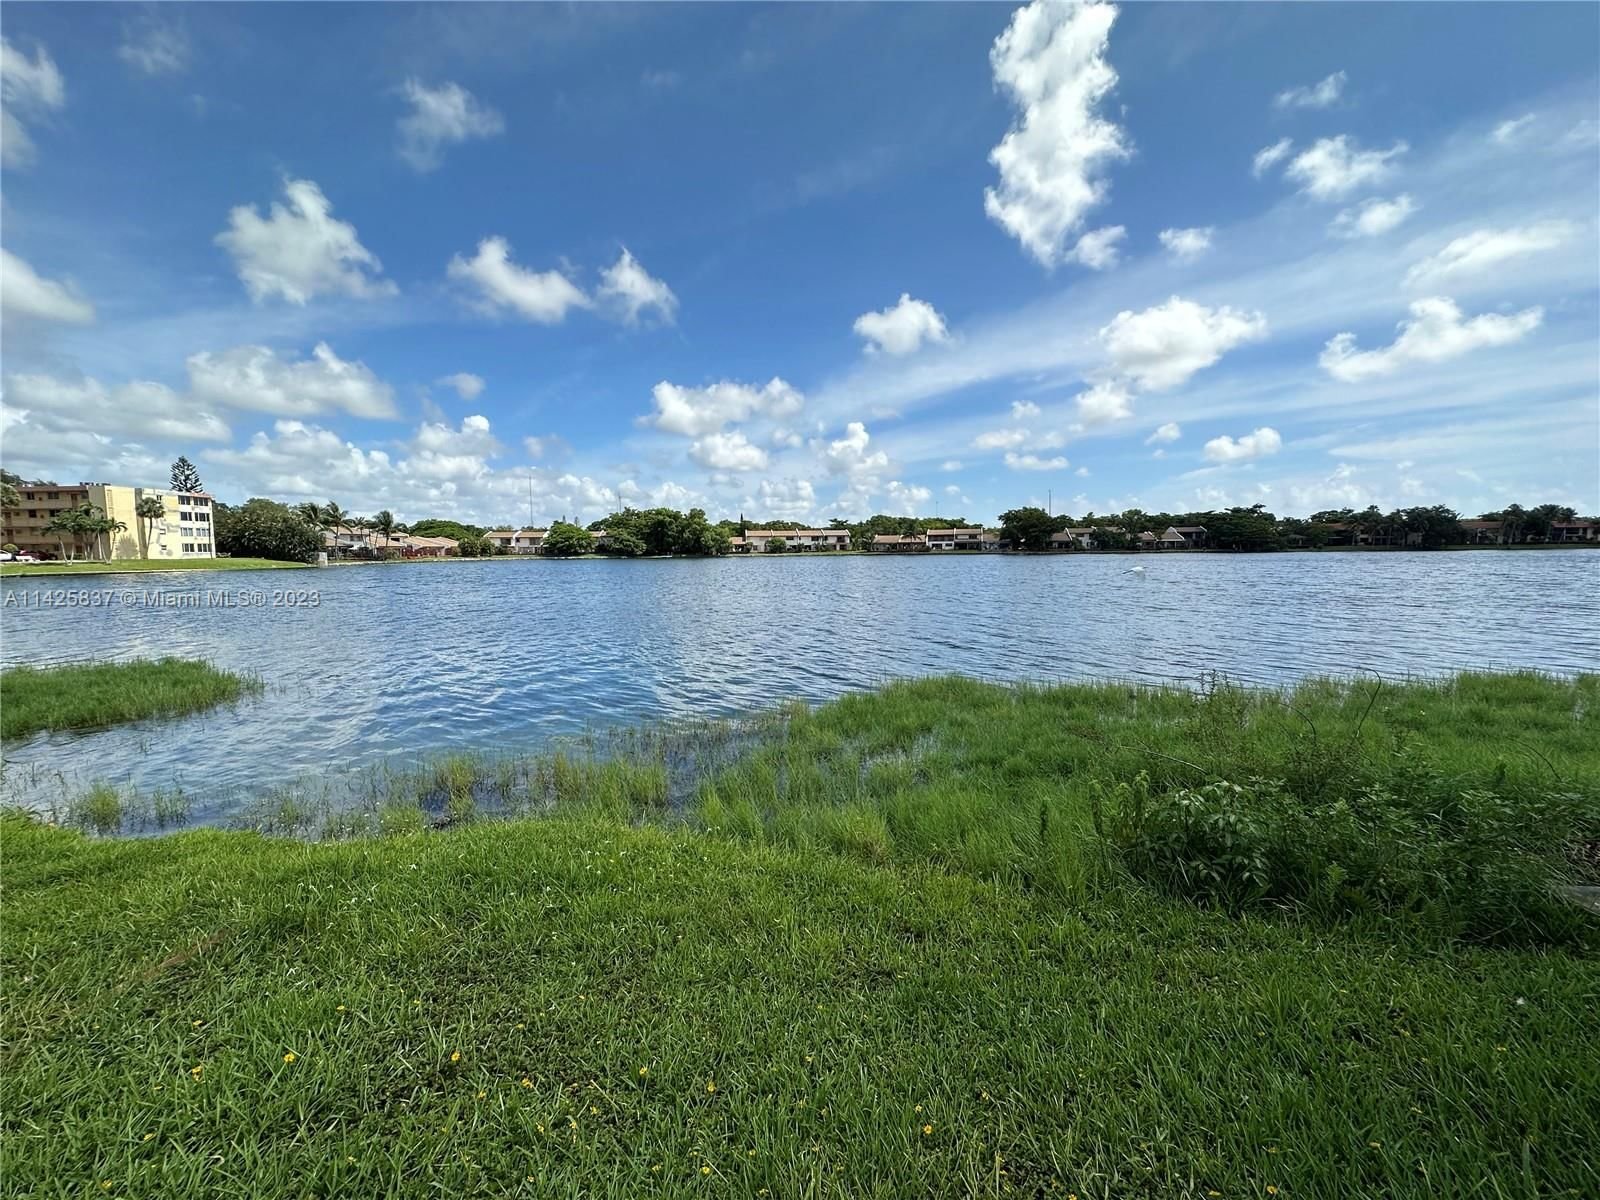 Real estate property located at 671 195th St #211E, Miami-Dade County, Miami, FL